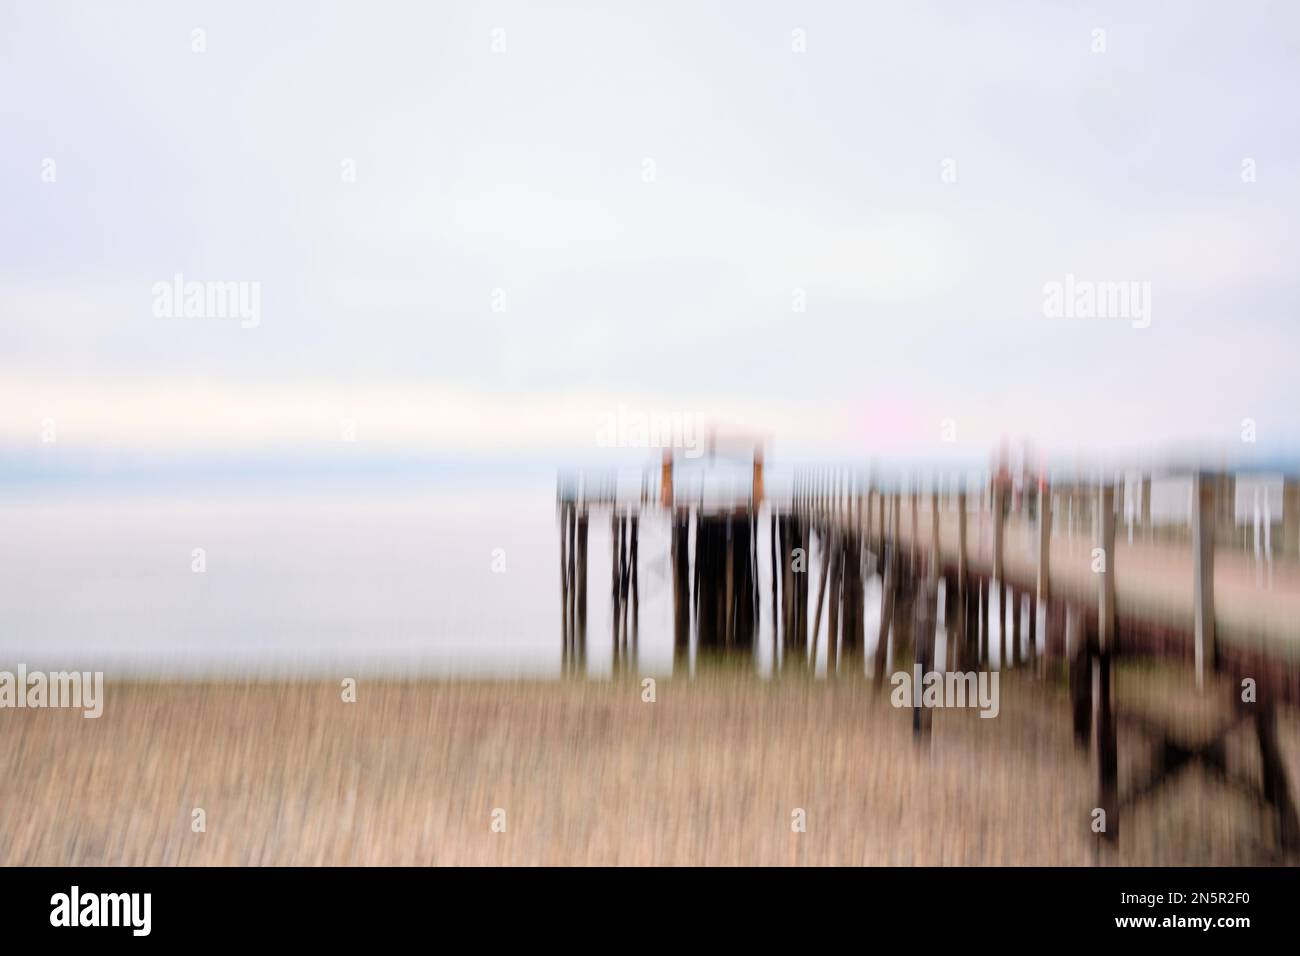 Image de mouvement intentionnel de caméra (ICM) du quai de Davis Bay et de la plage de galets le jour couvert. Sechelt, C.-B. Banque D'Images